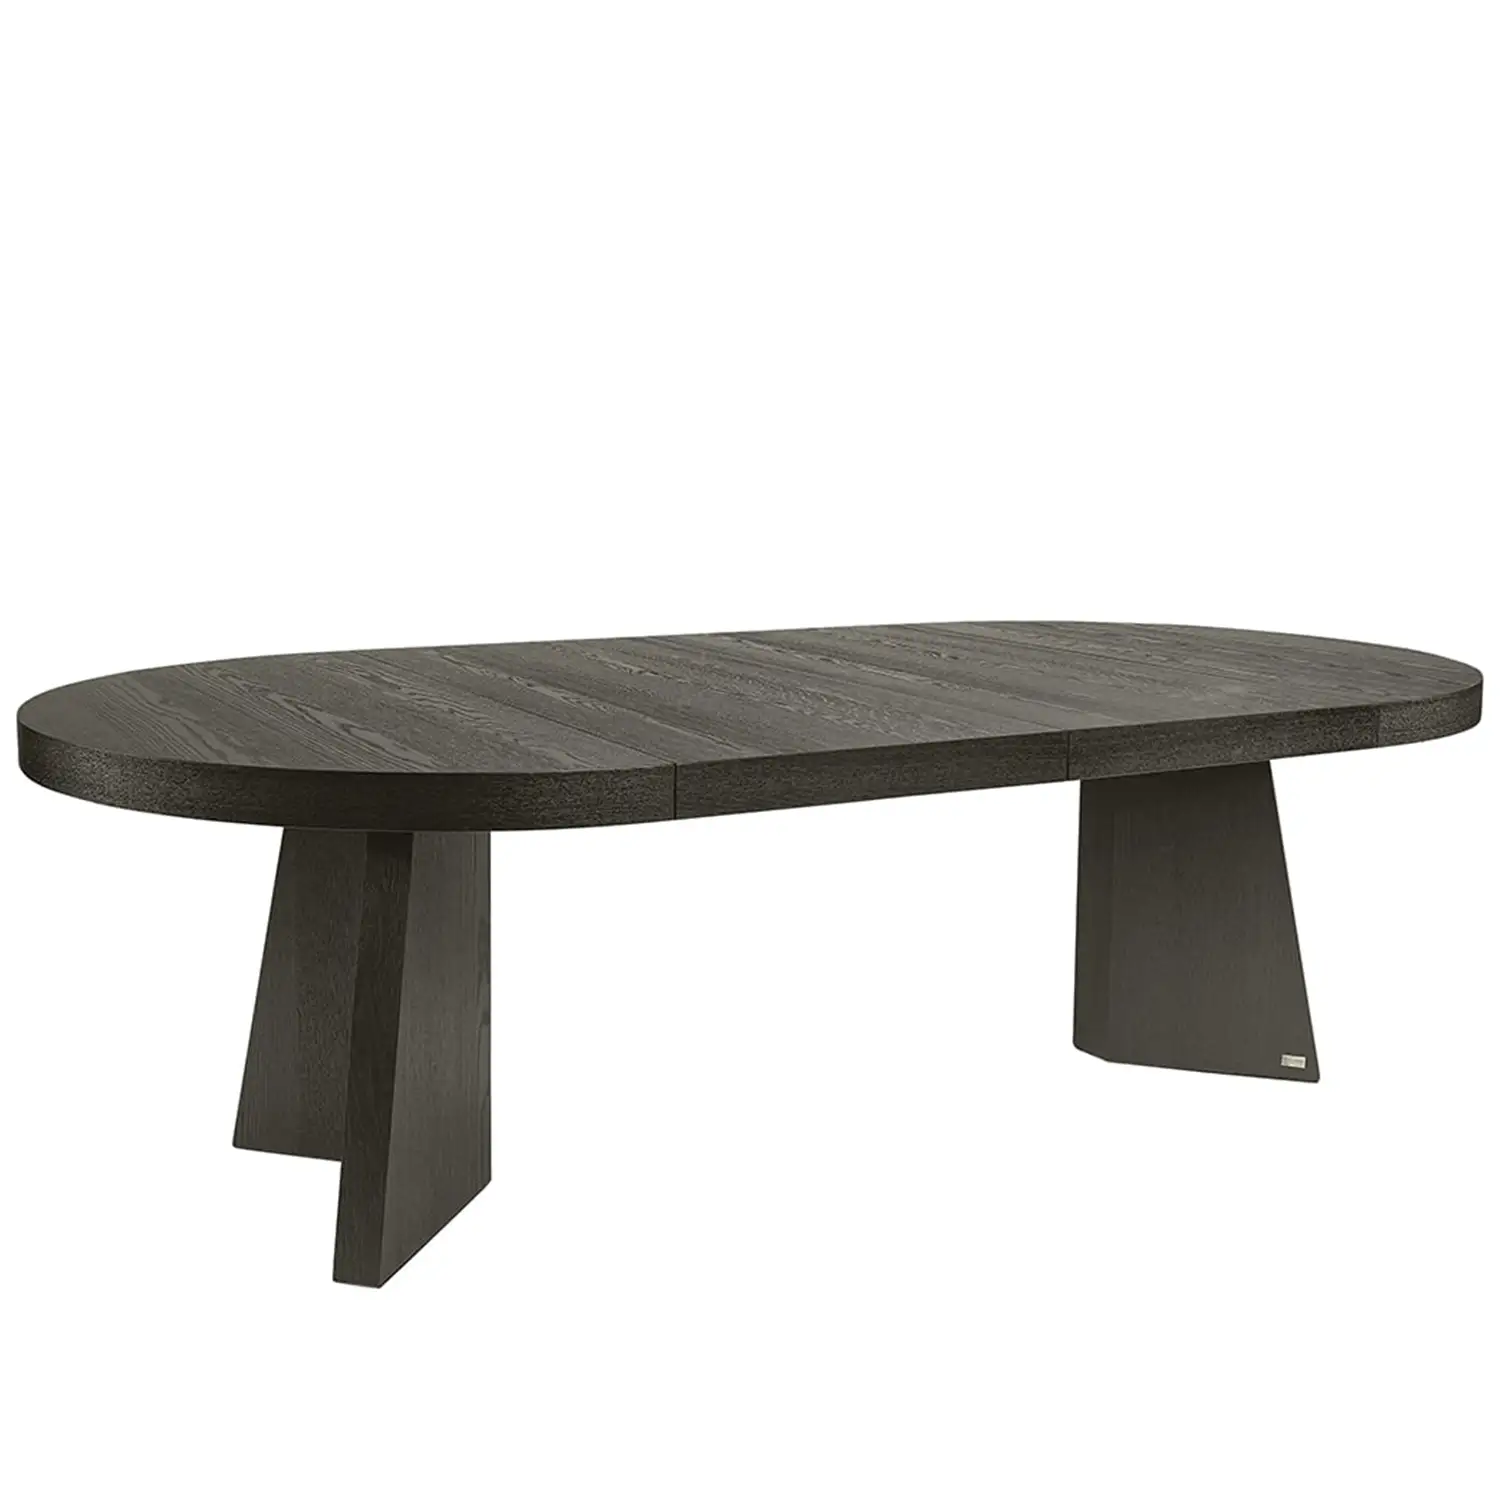 Trent förlängningsbart matbord mörkgrå 130-250x130 cm